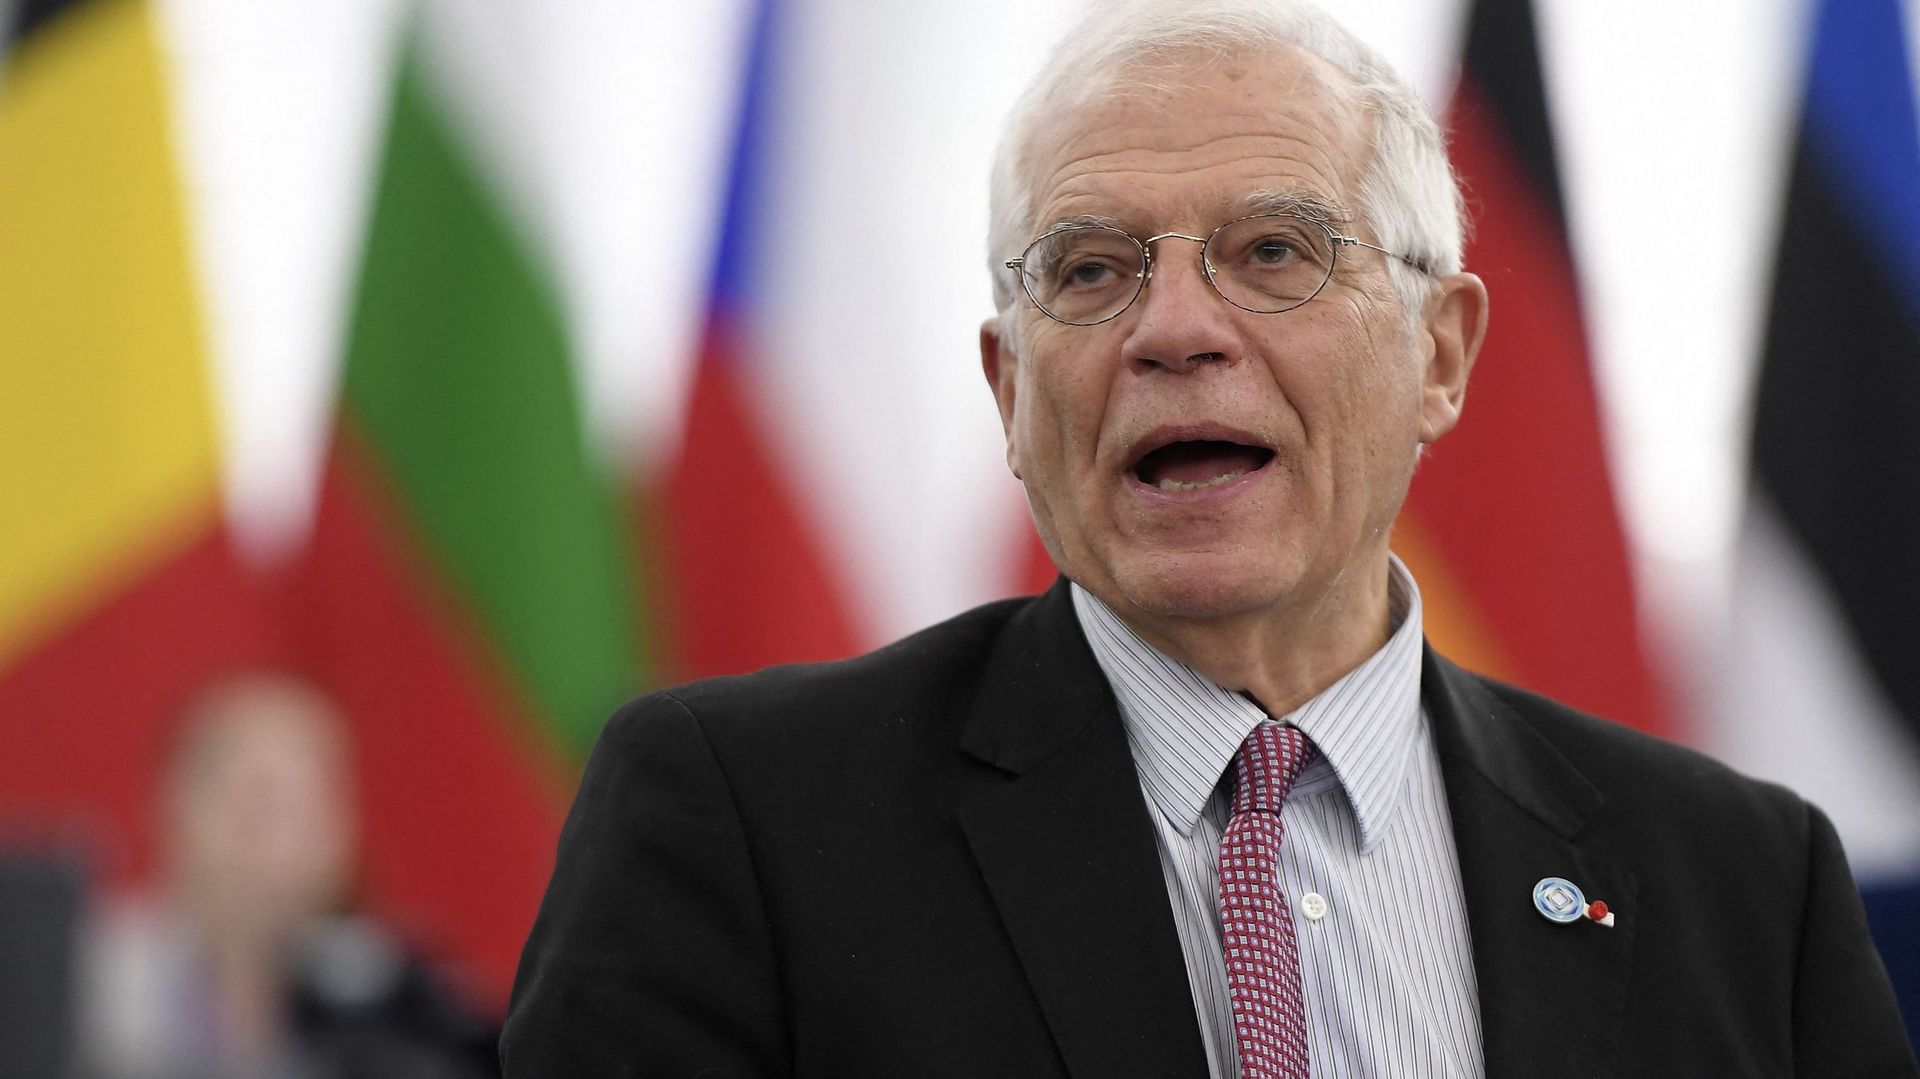 L'Union européenne a décidé lundi de sanctionner les militaires responsables du coup d'Etat en Birmanie, a annoncé le chef de la diplomatie européenne Josep Borrell.